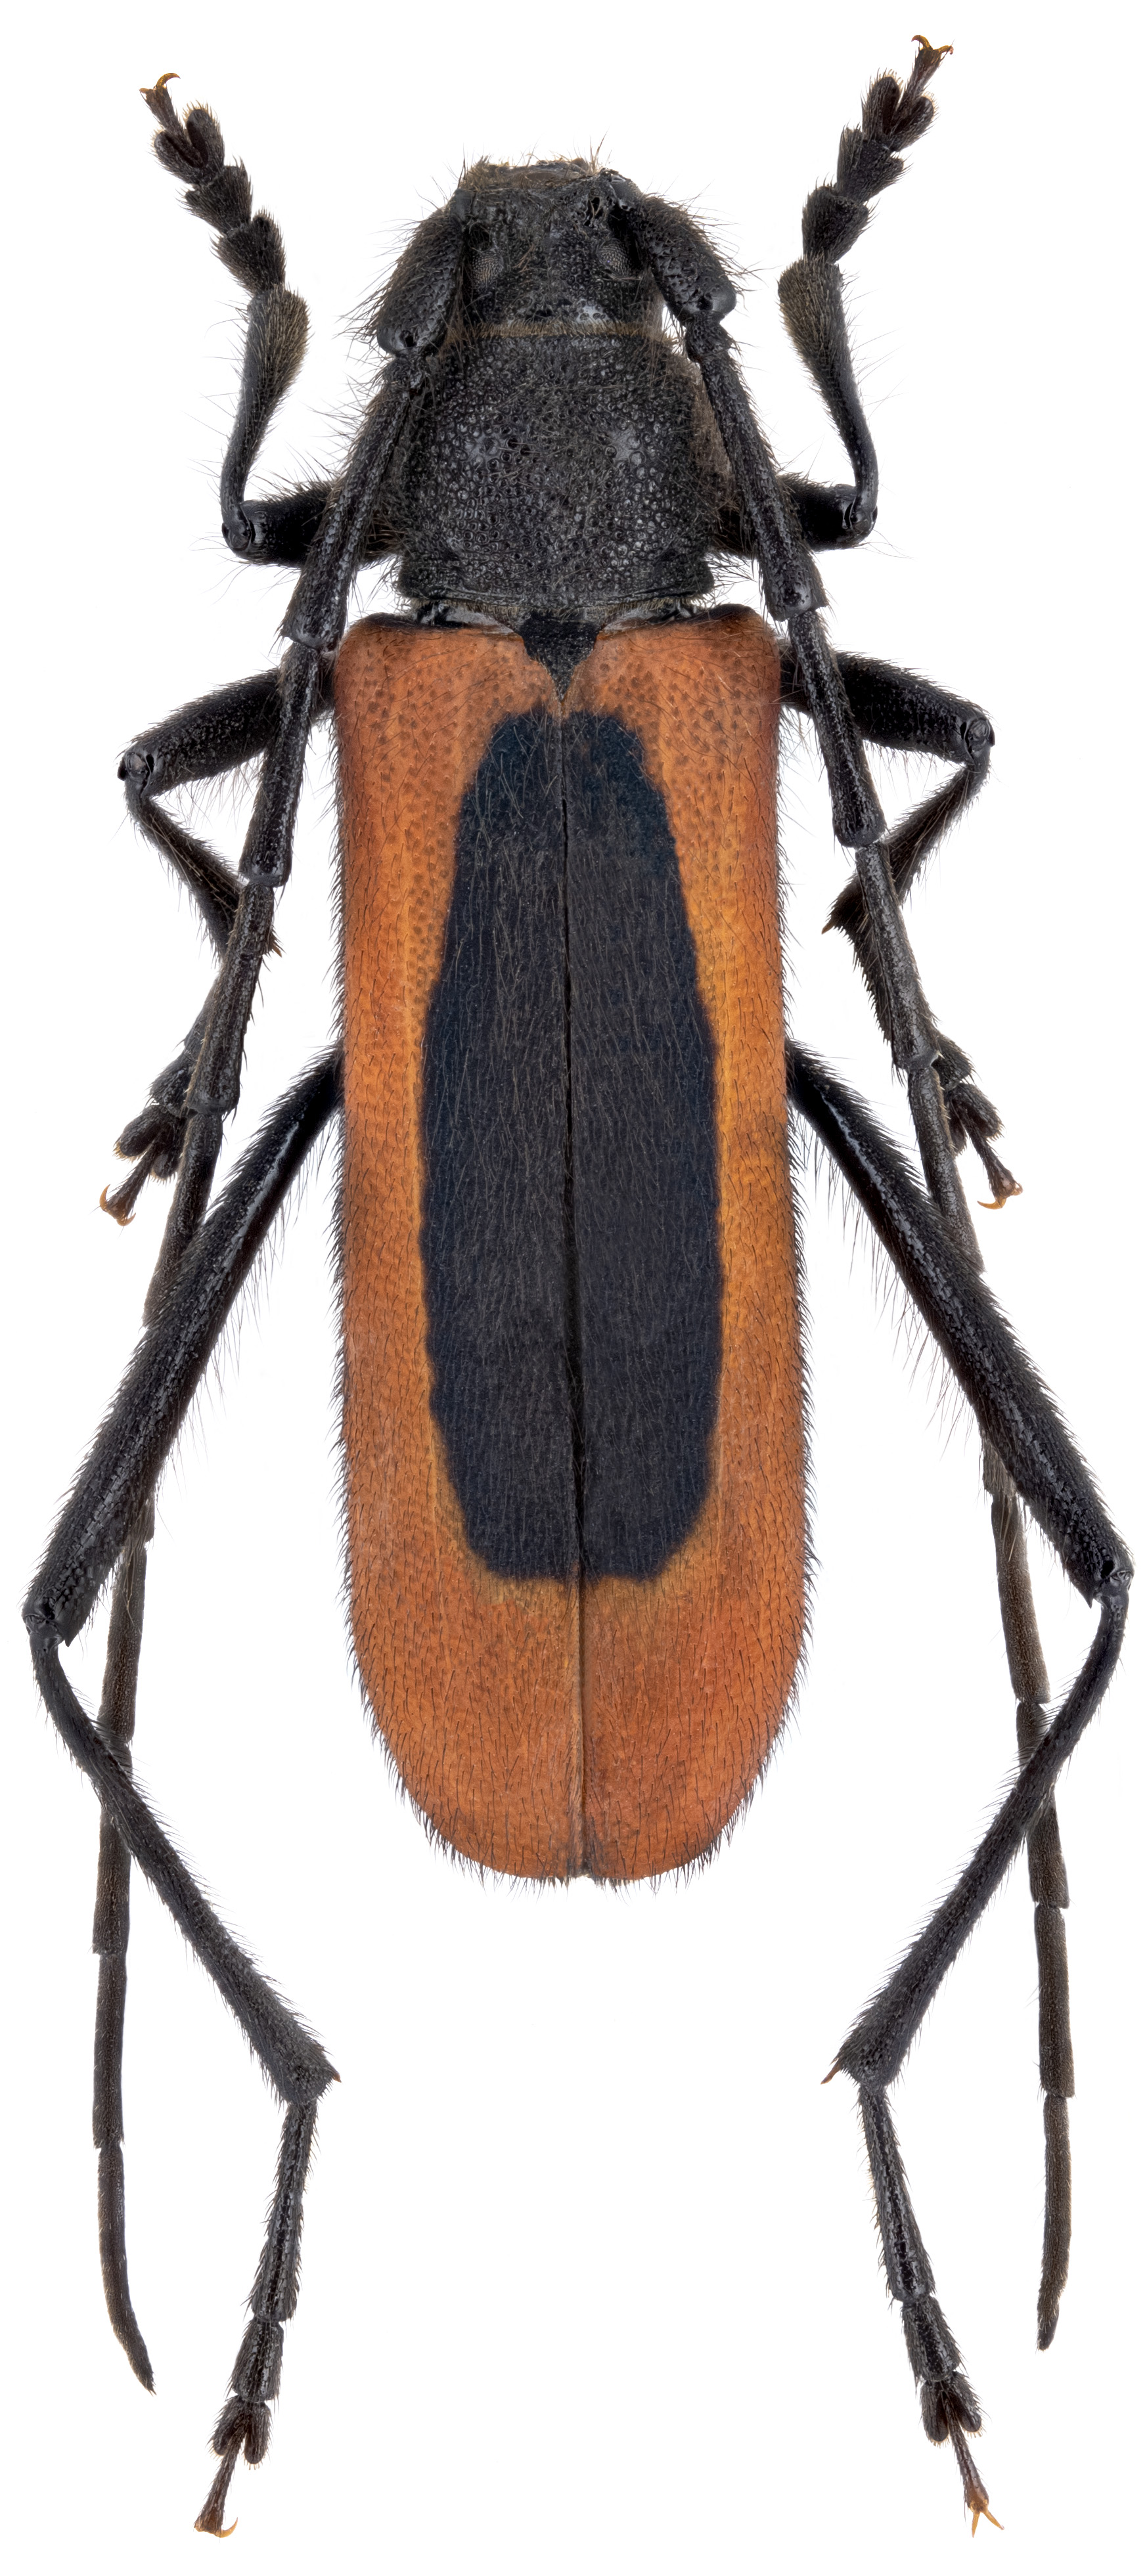 Amarysius altajensis coreanus